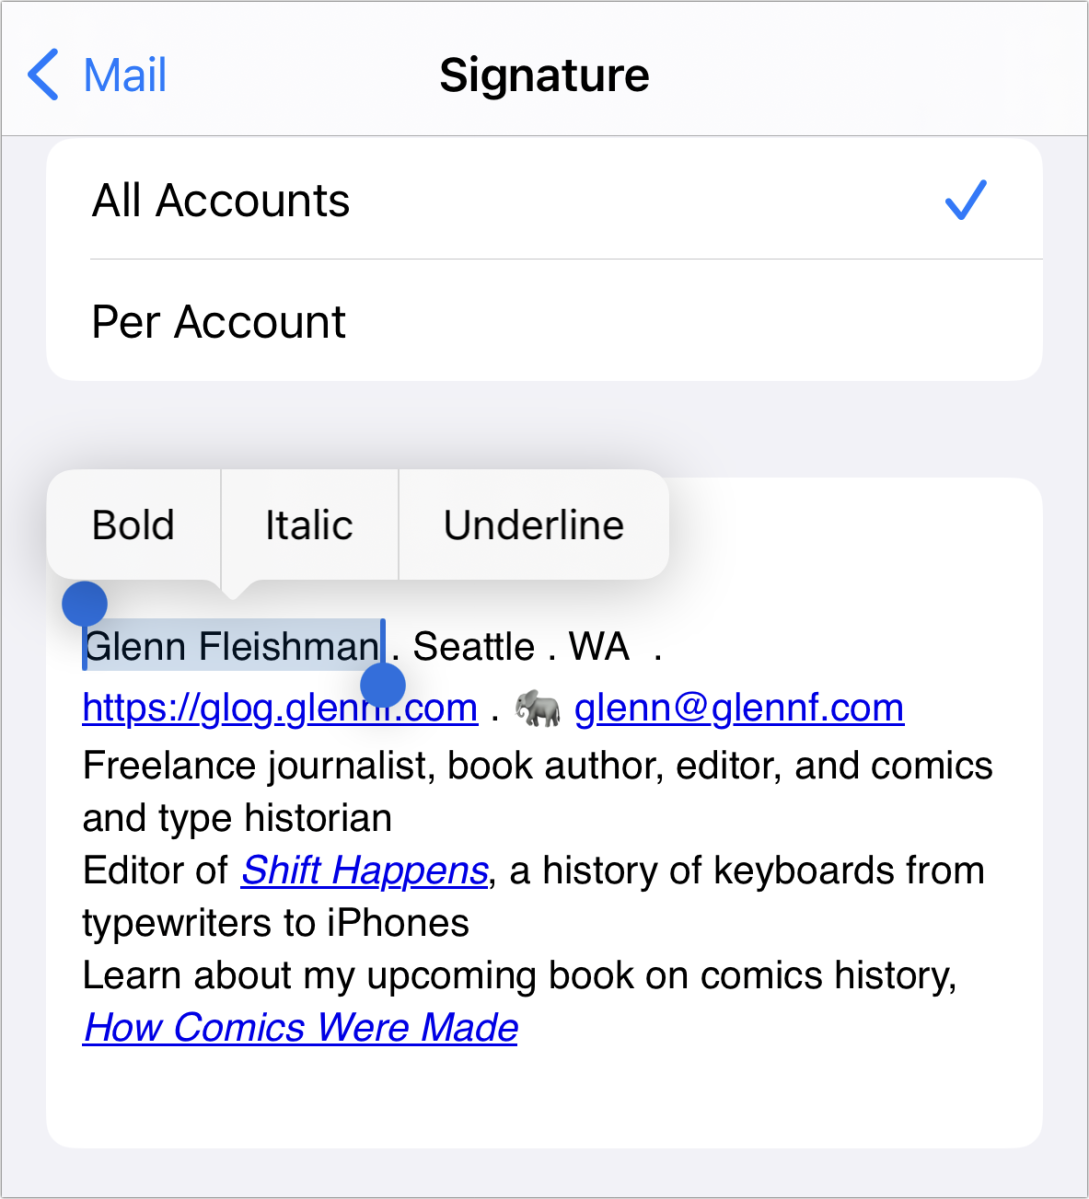 iOS mail signature settings